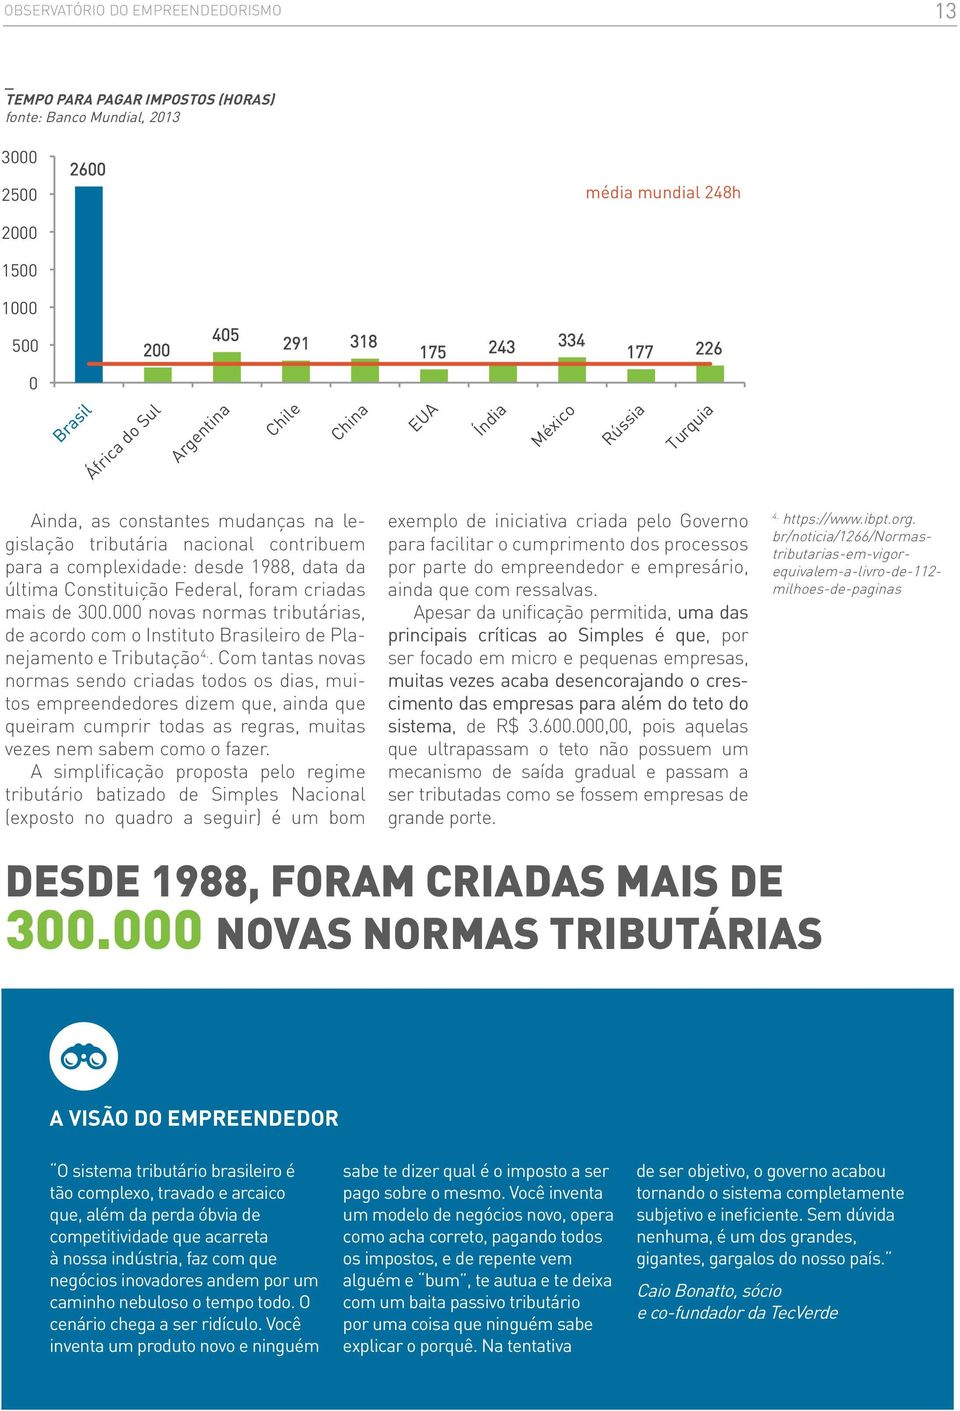 Federal, foram criadas mais de 300.000 novas normas tributárias, de acordo com o Instituto Brasileiro de Planejamento e Tributação 4.